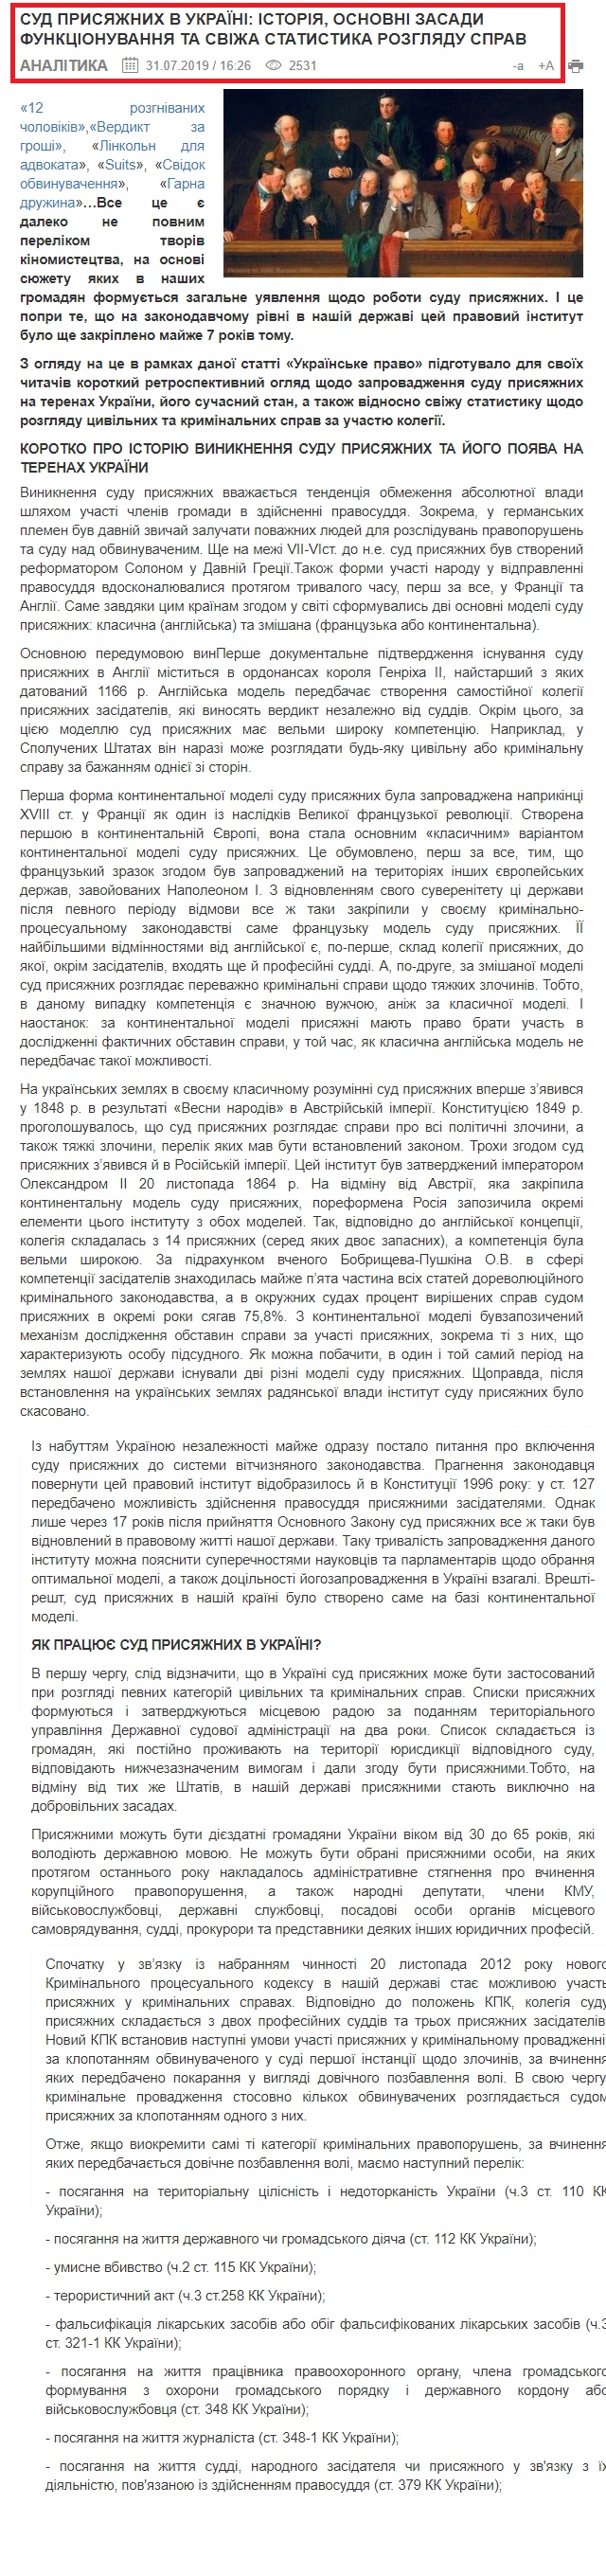 https://www.ukrainepravo.com/scientific-thought/legal_analyst/sud-prysyazhnykh-v-ukrayini-istoriya-osnovni-zasady-funktsionuvannya-ta-svizha-statystyka-rozglyadu-/